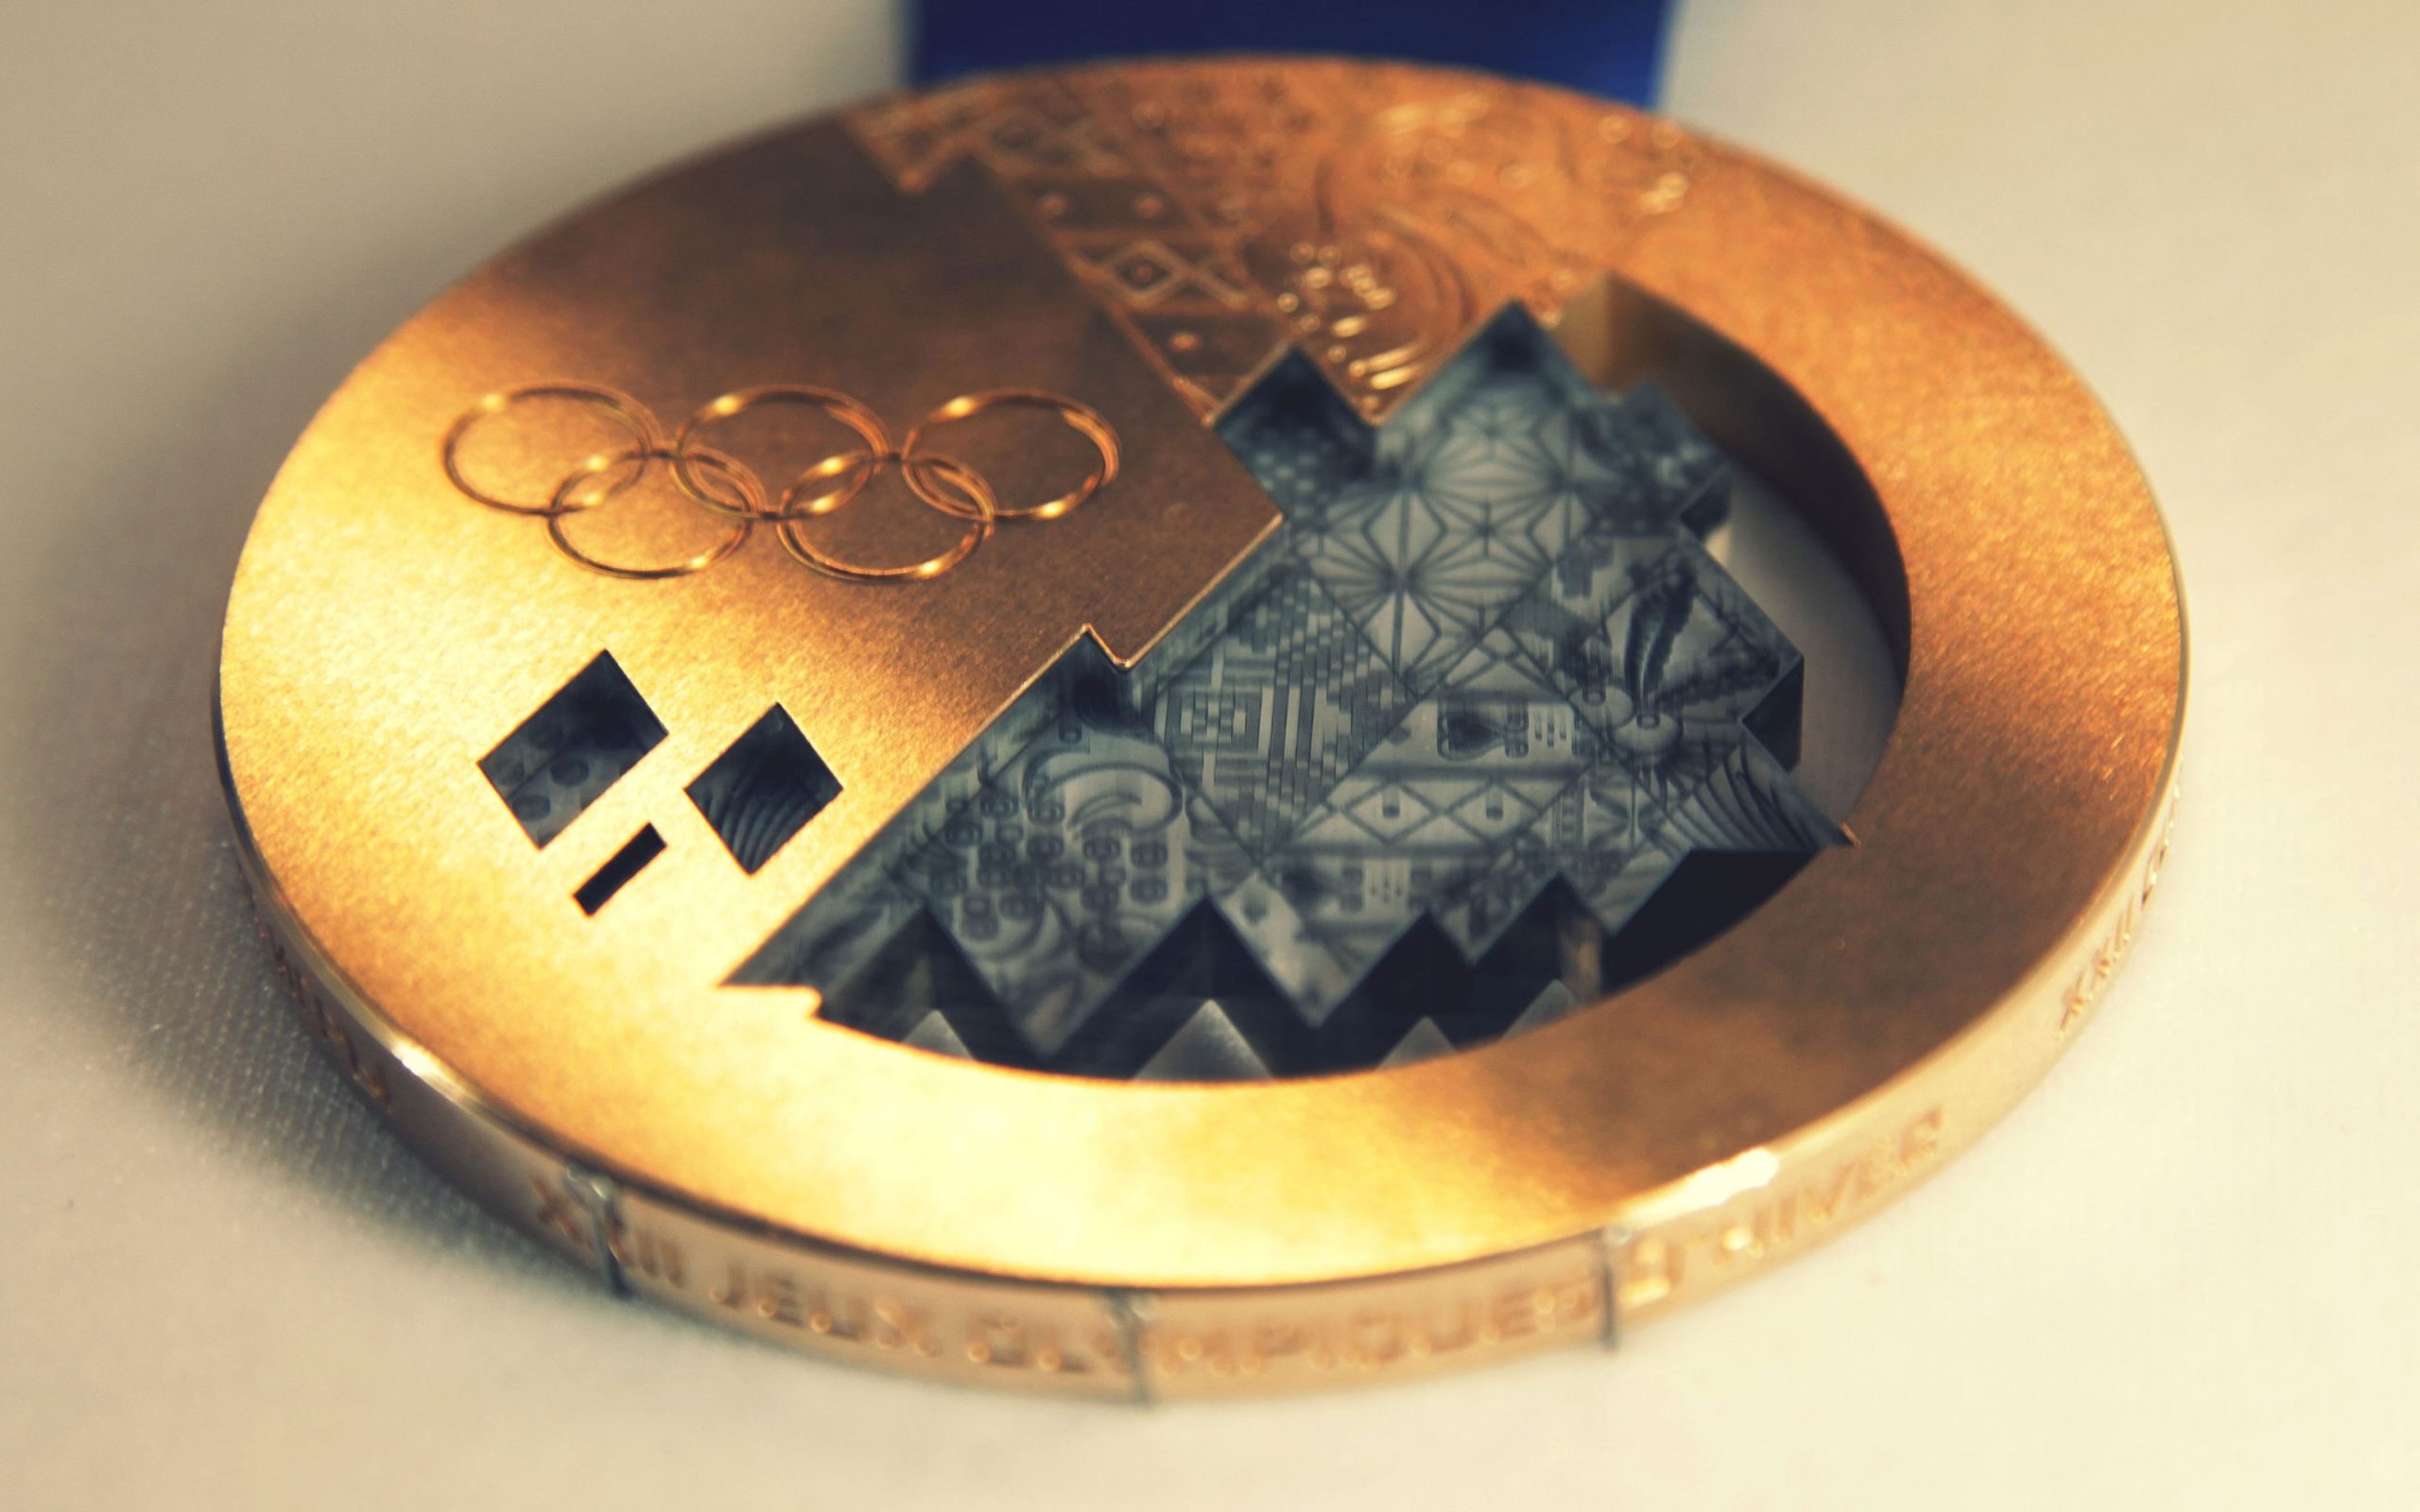 Gold Medal of Sochi 2014